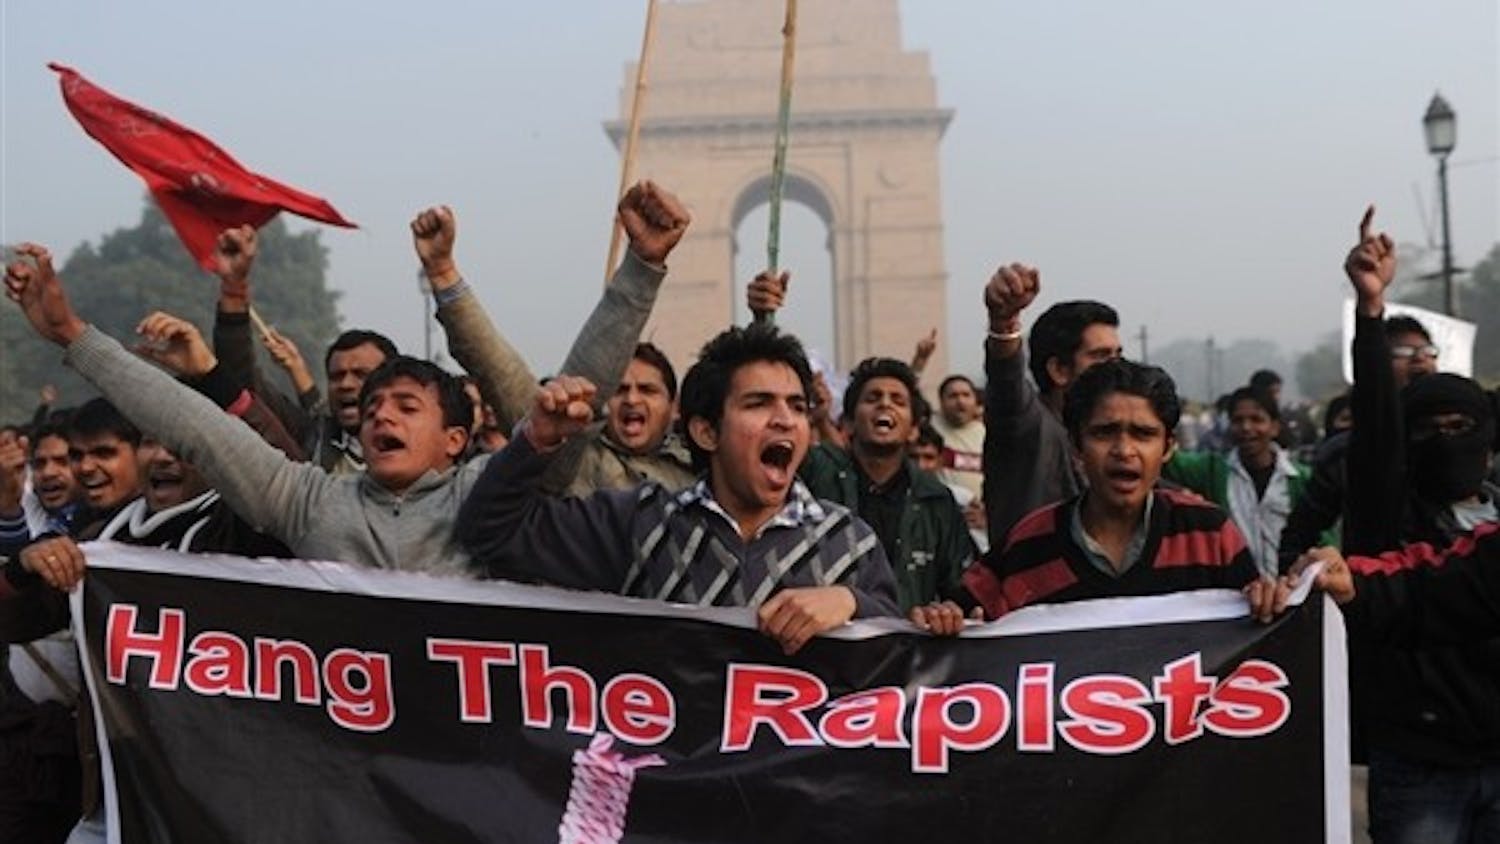 121223-world-india-rape1-7a.photoblog600.jpg